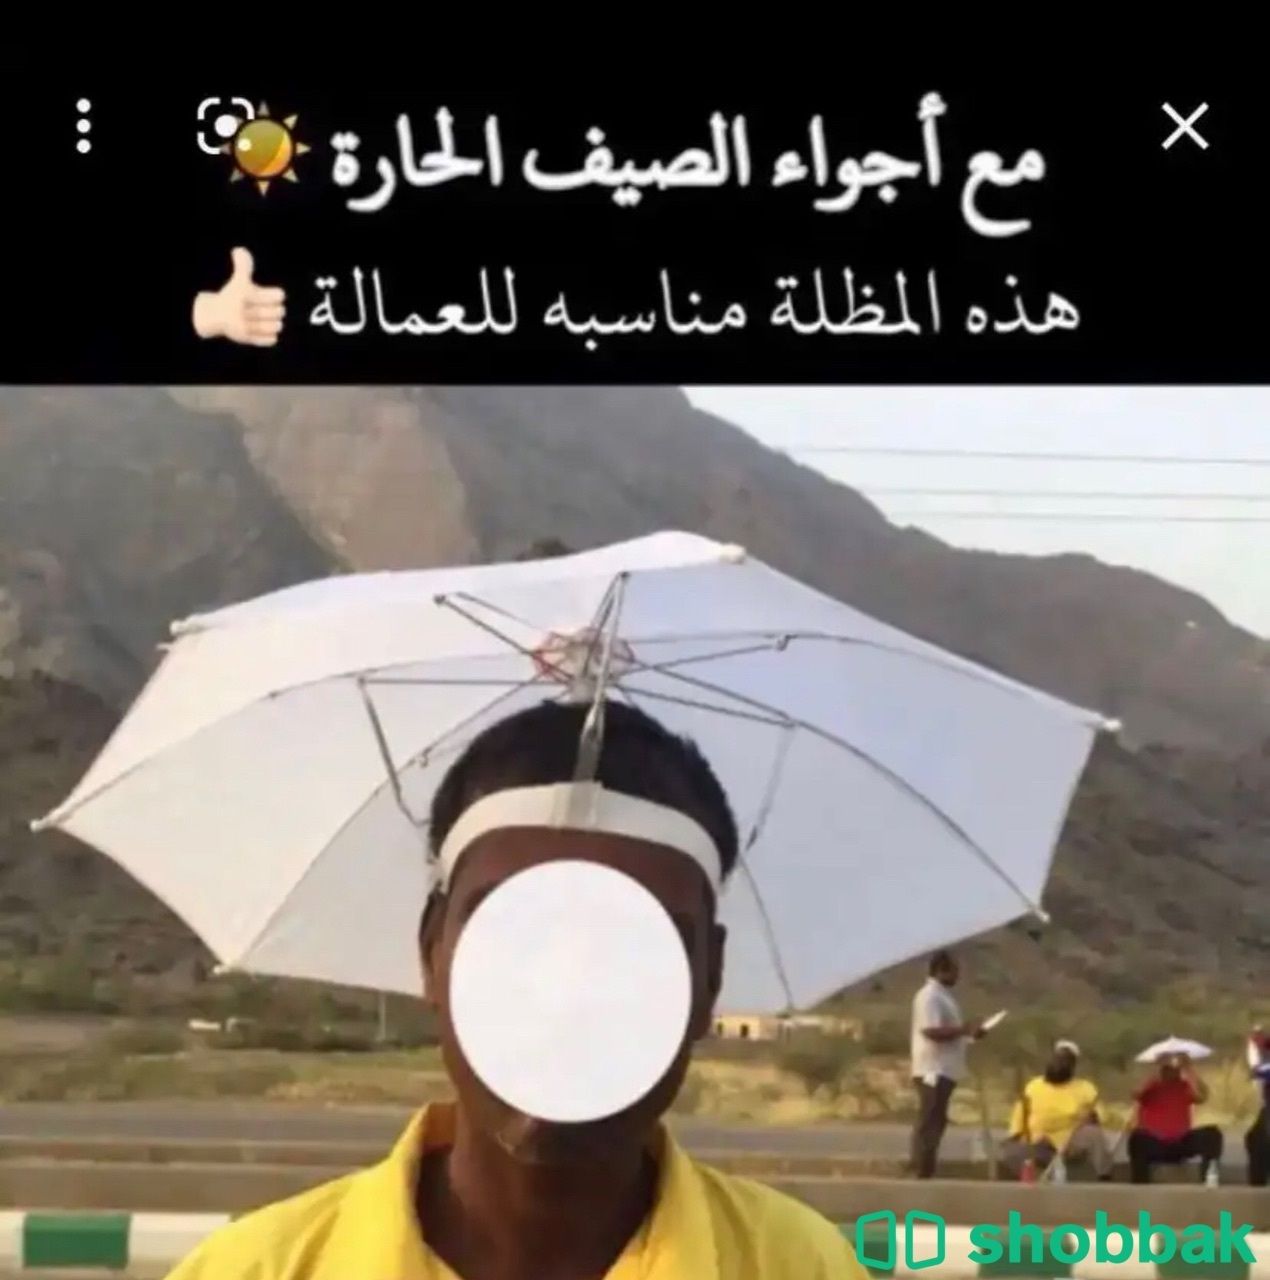 مظلة راس تحمى من اشعة الشمس شباك السعودية